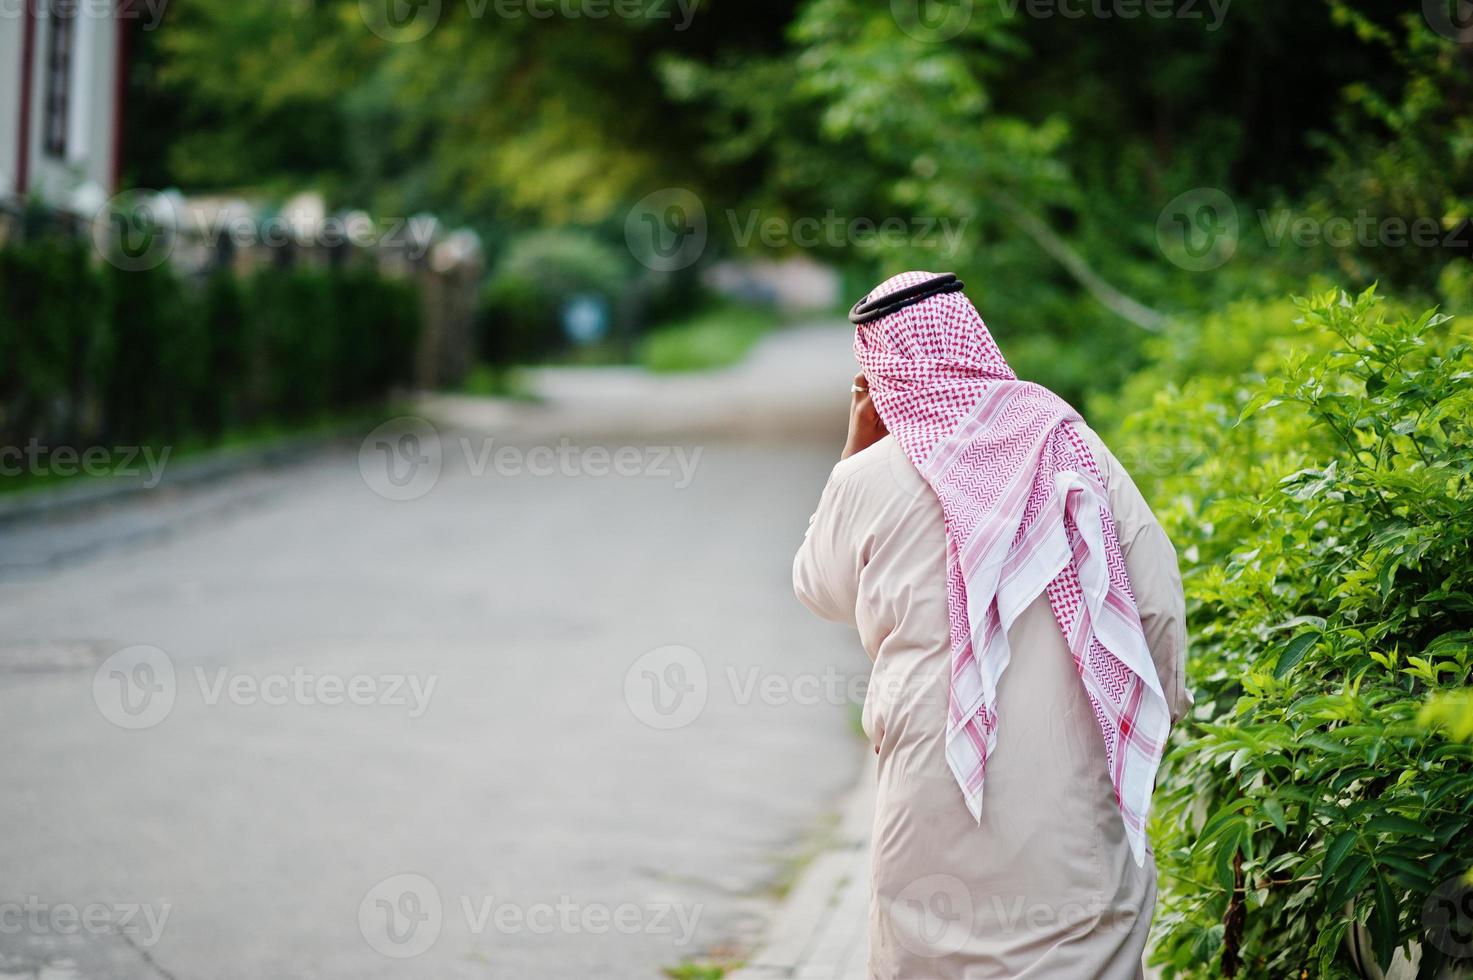 baksidan av mellanöstern arabisk affärsman poserade på gatan talar i mobiltelefon. foto